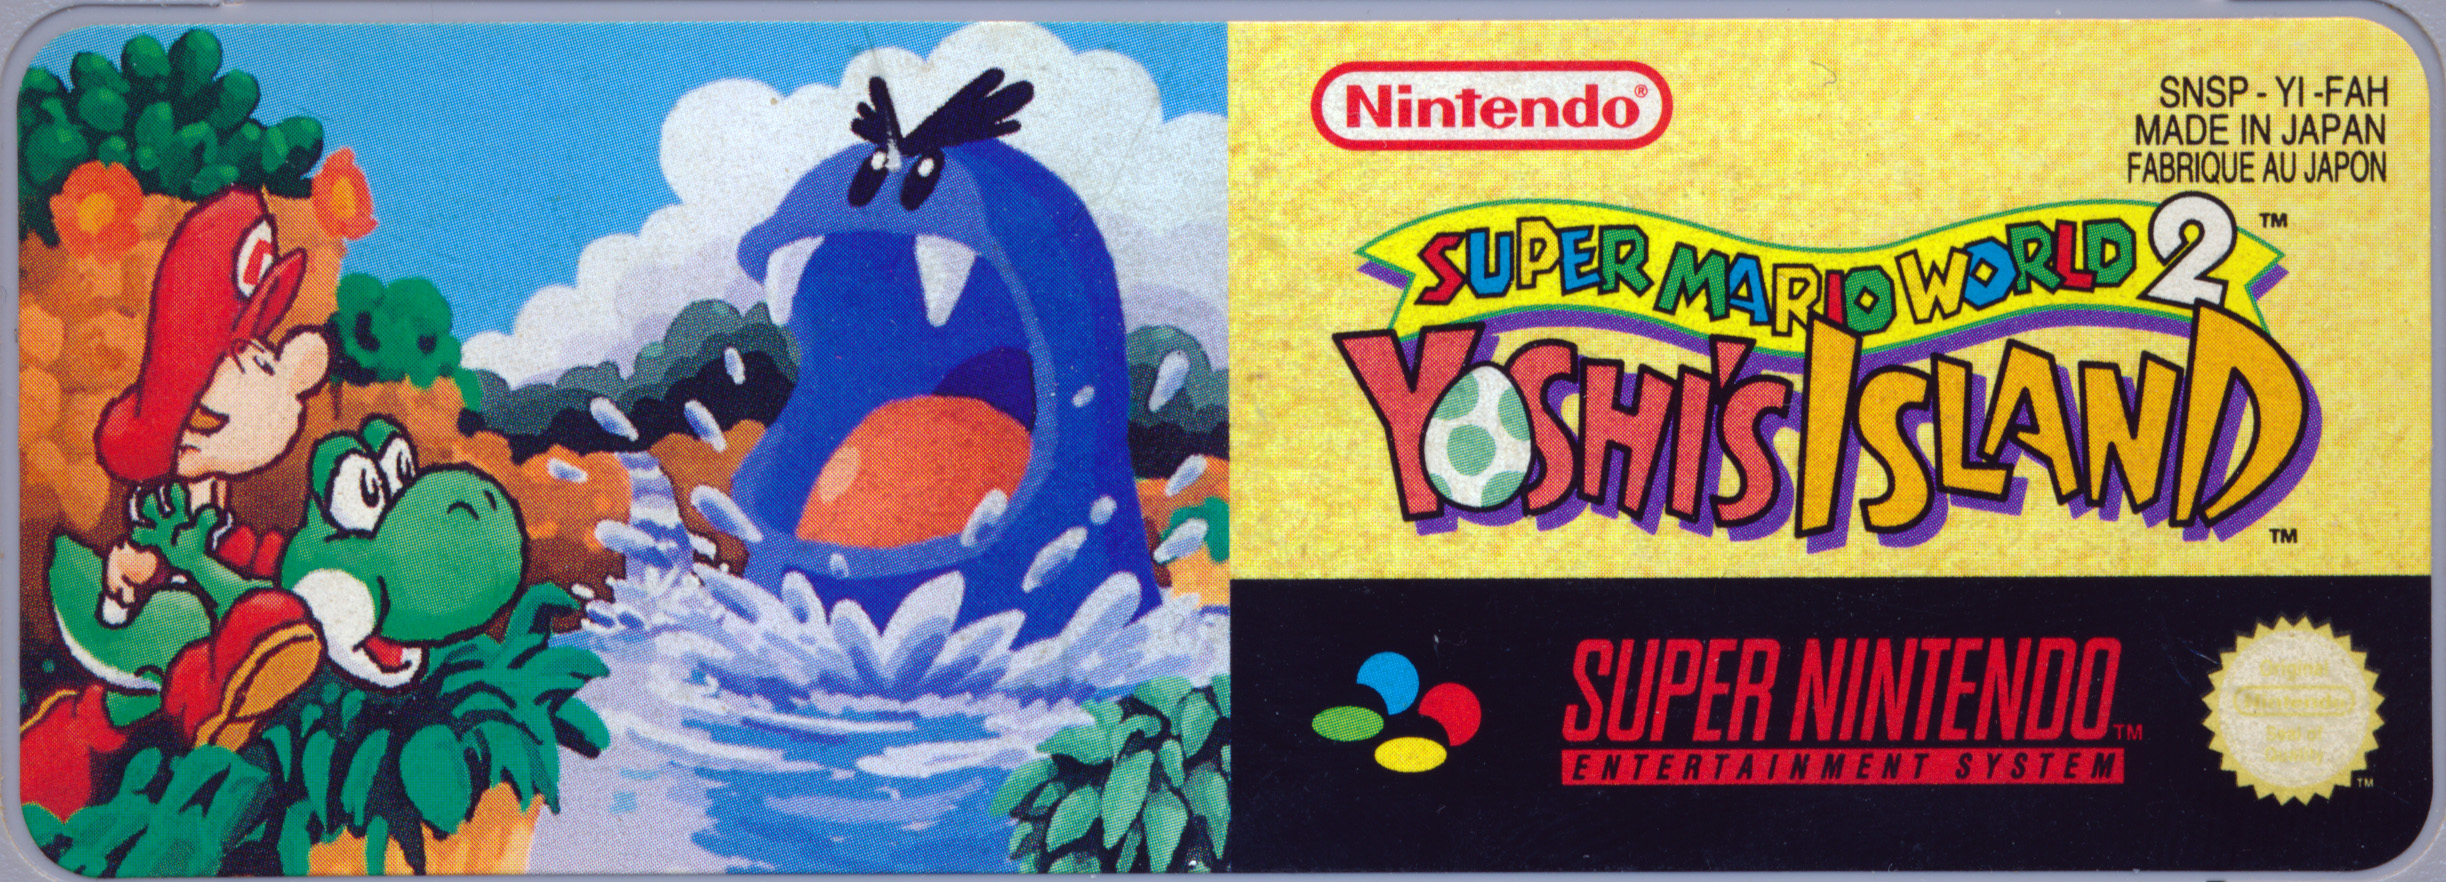 Yoshi island 2. Super Mario World 2 - Yoshi's Island Snes. Super Mario World 2 Yoshi's Island Snes обложка. Super Mario World 2 Yoshis Island. Yoshi Island обложка.